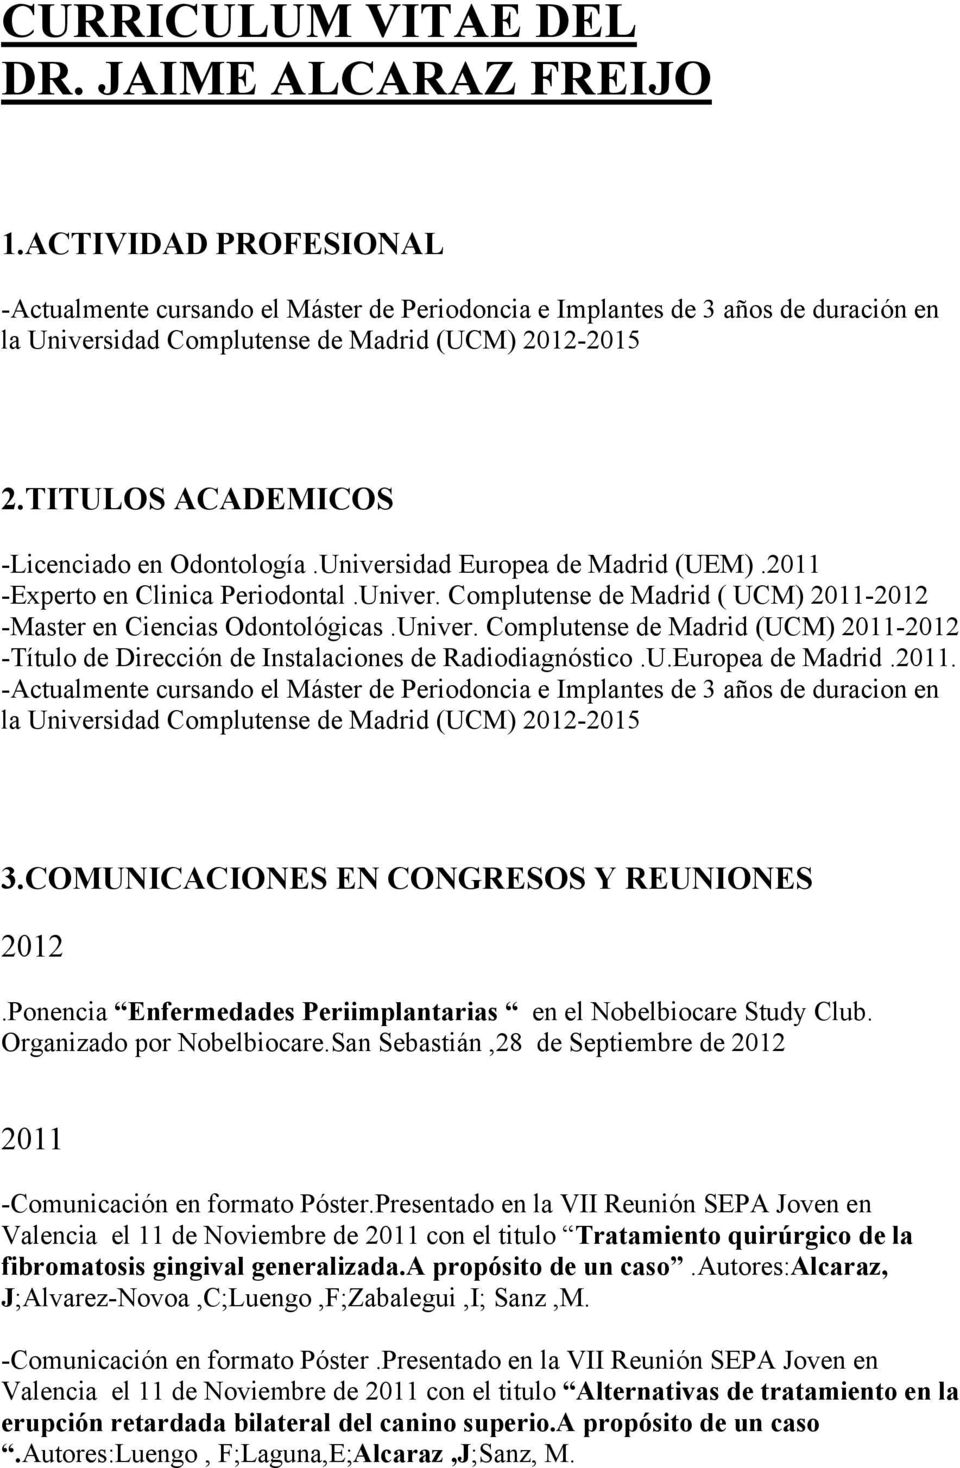 TITULOS ACADEMICOS -Licenciado en Odontología.Universidad Europea de Madrid (UEM).2011 -Experto en Clinica Periodontal.Univer. Complutense de Madrid ( UCM) 2011-2012 -Master en Ciencias Odontológicas.